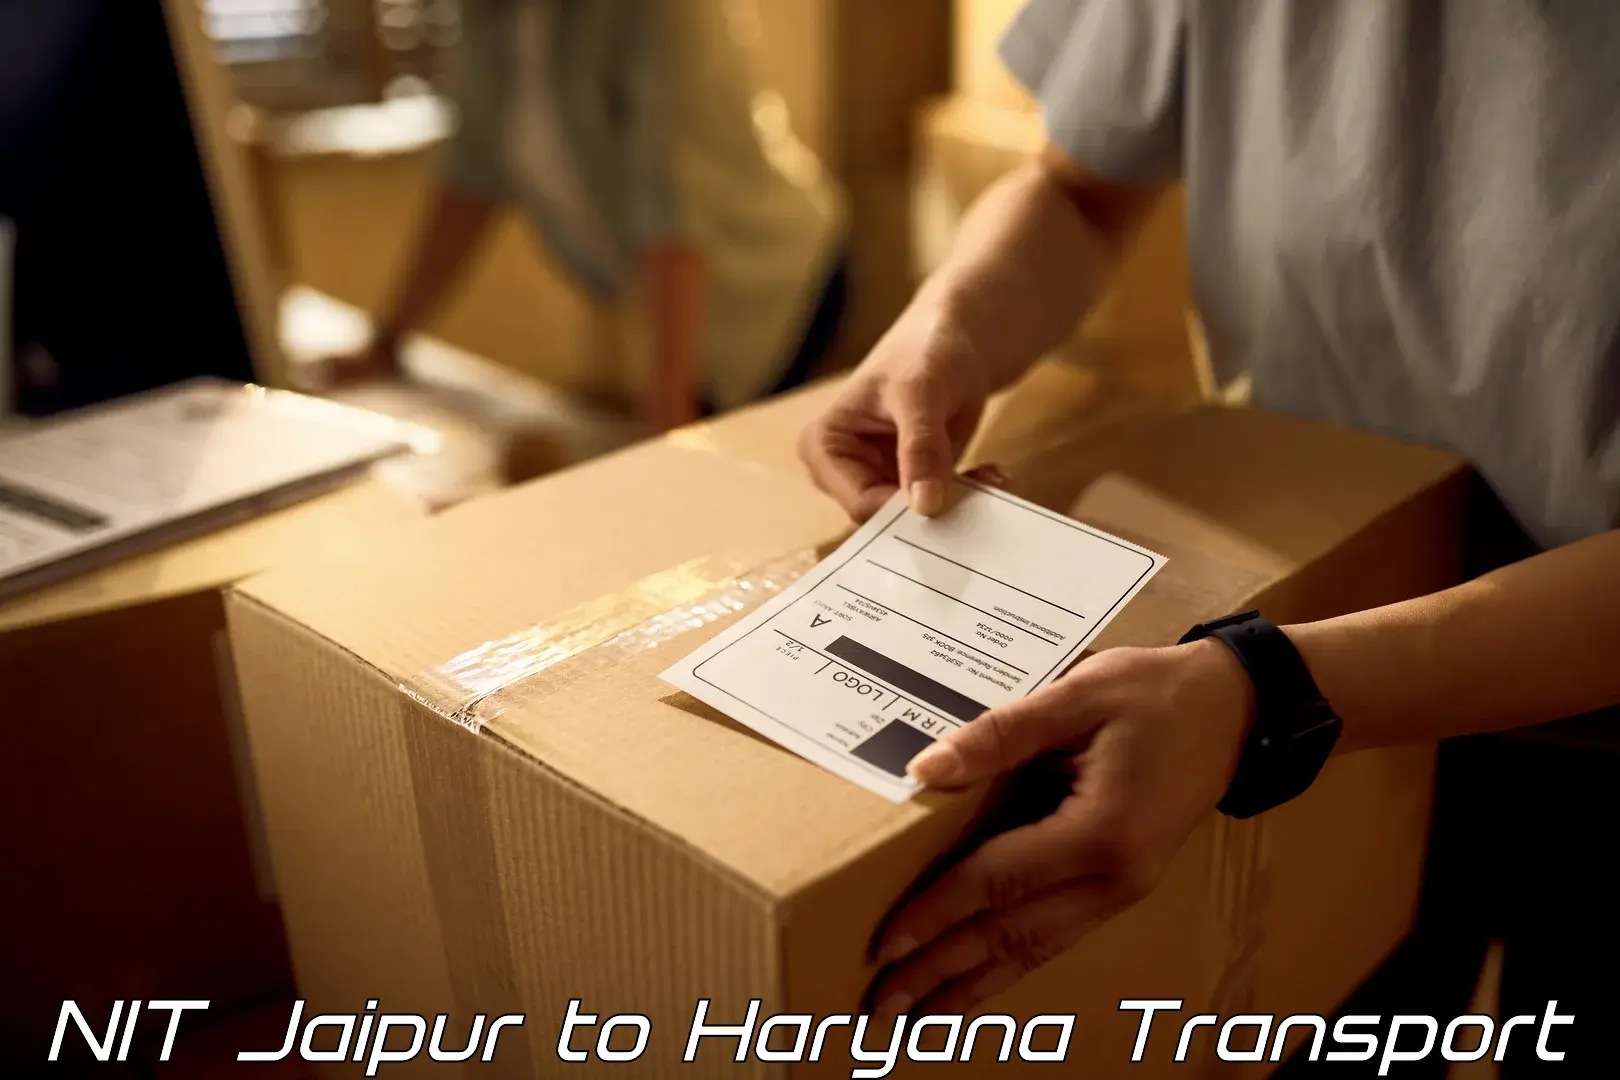 Transport in sharing NIT Jaipur to Bhiwani